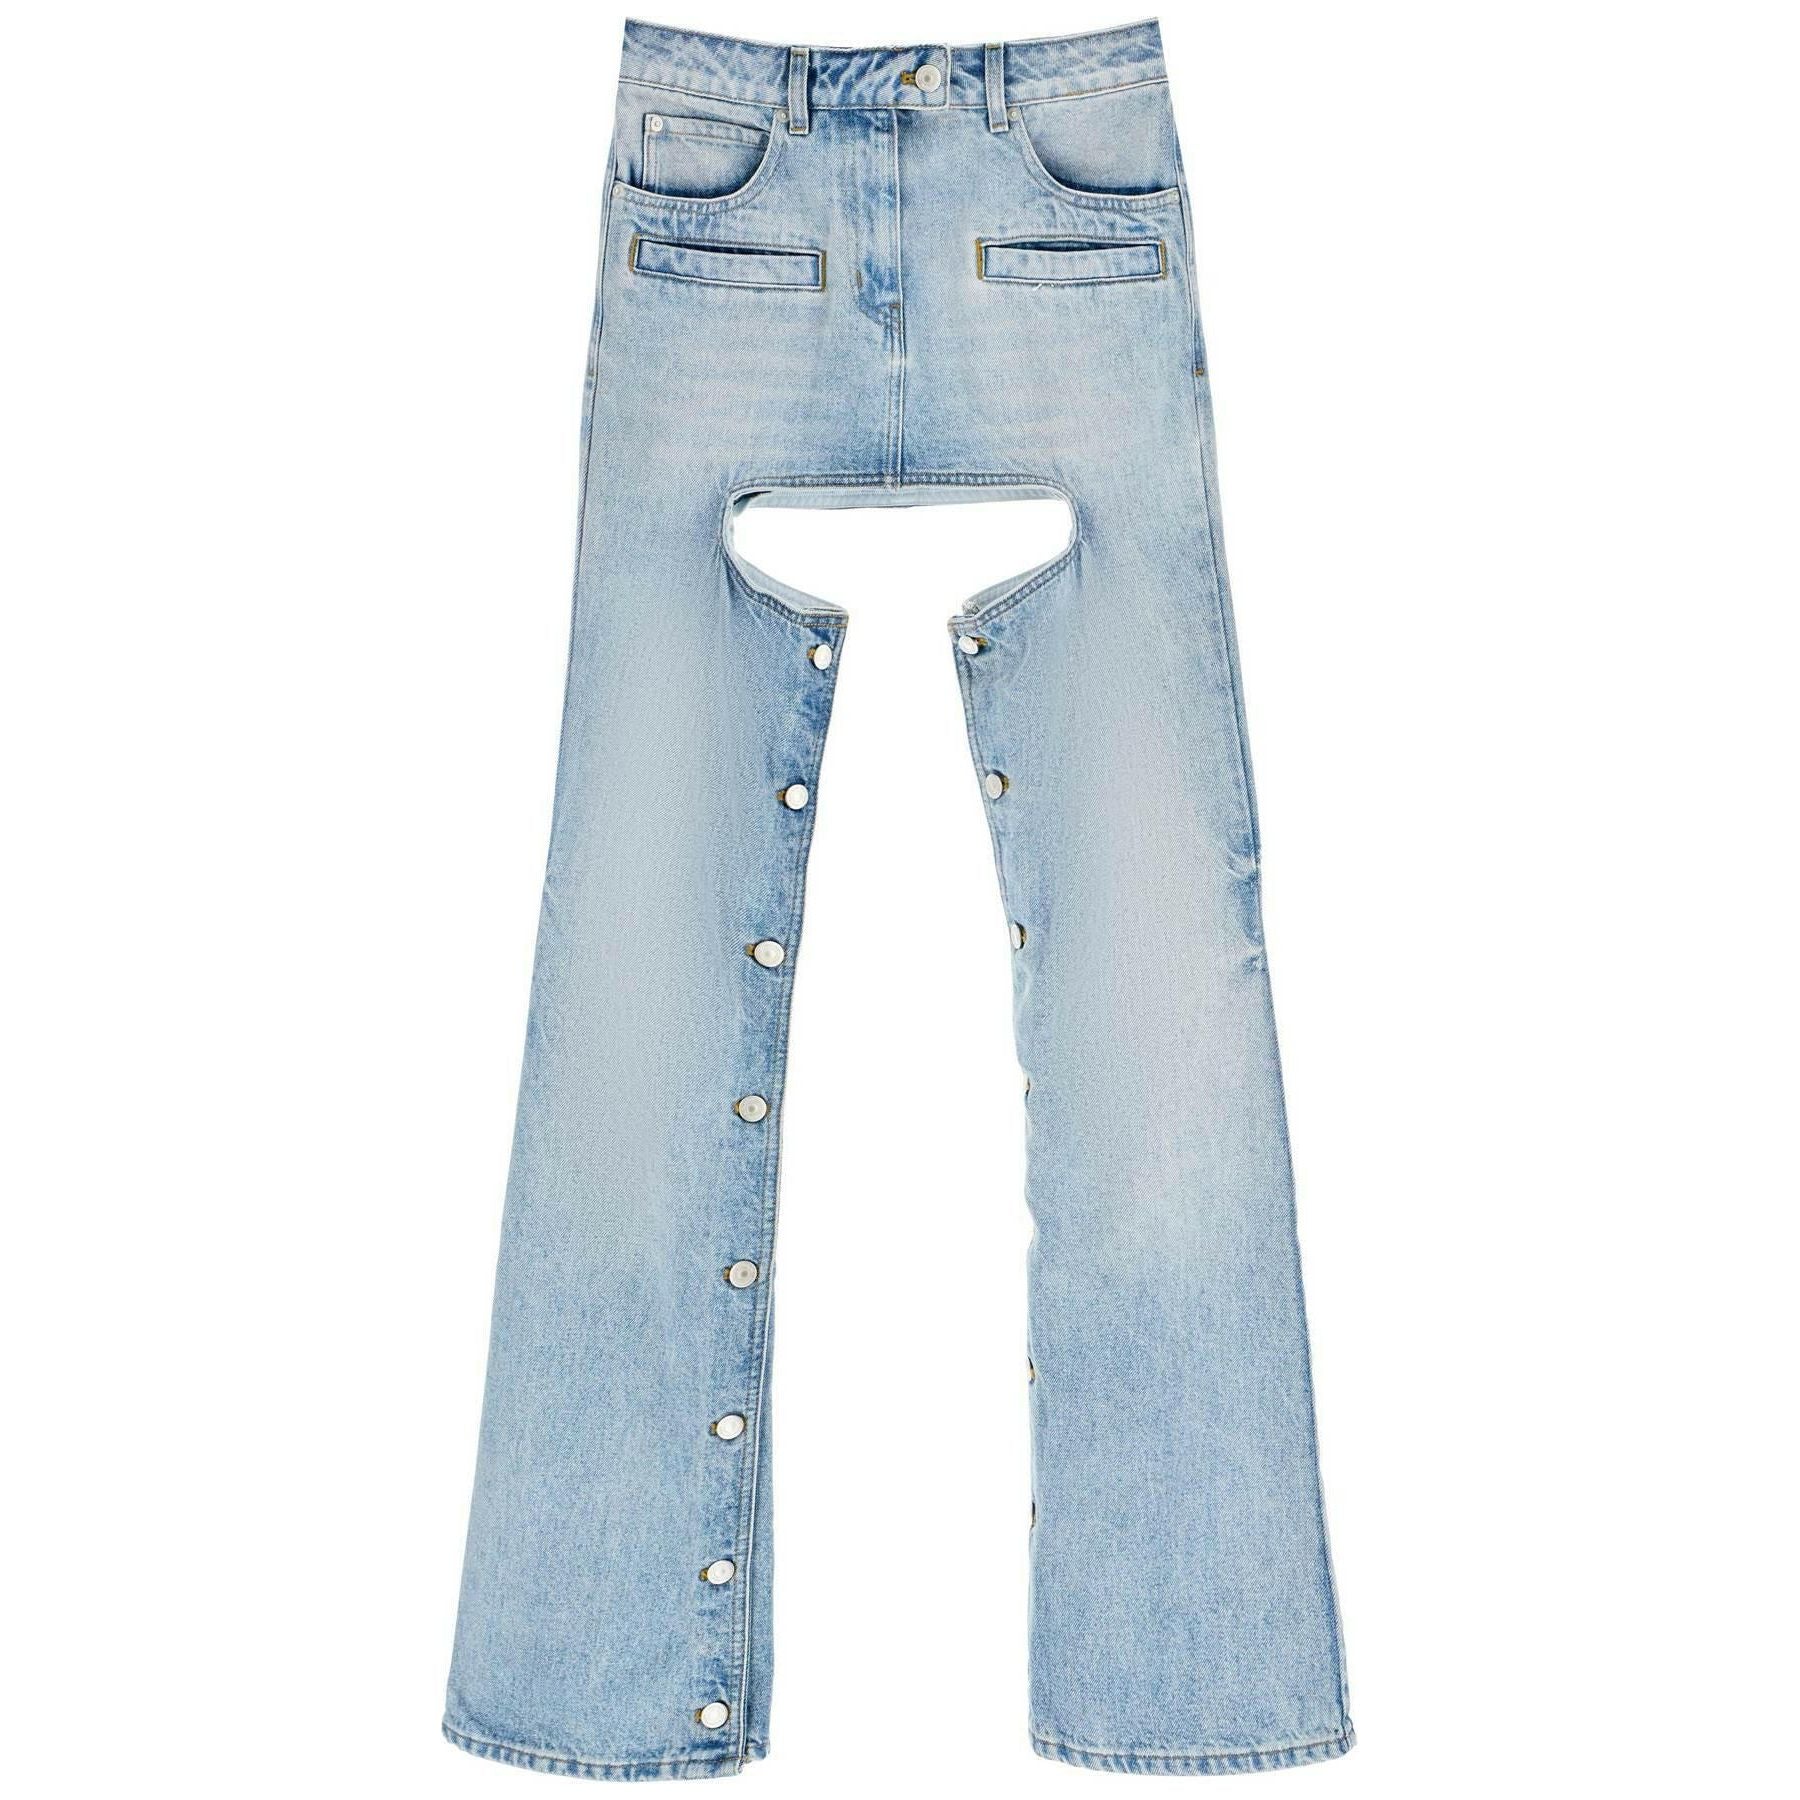 Chaps' Jeans With Cut Out COURREGES JOHN JULIA.